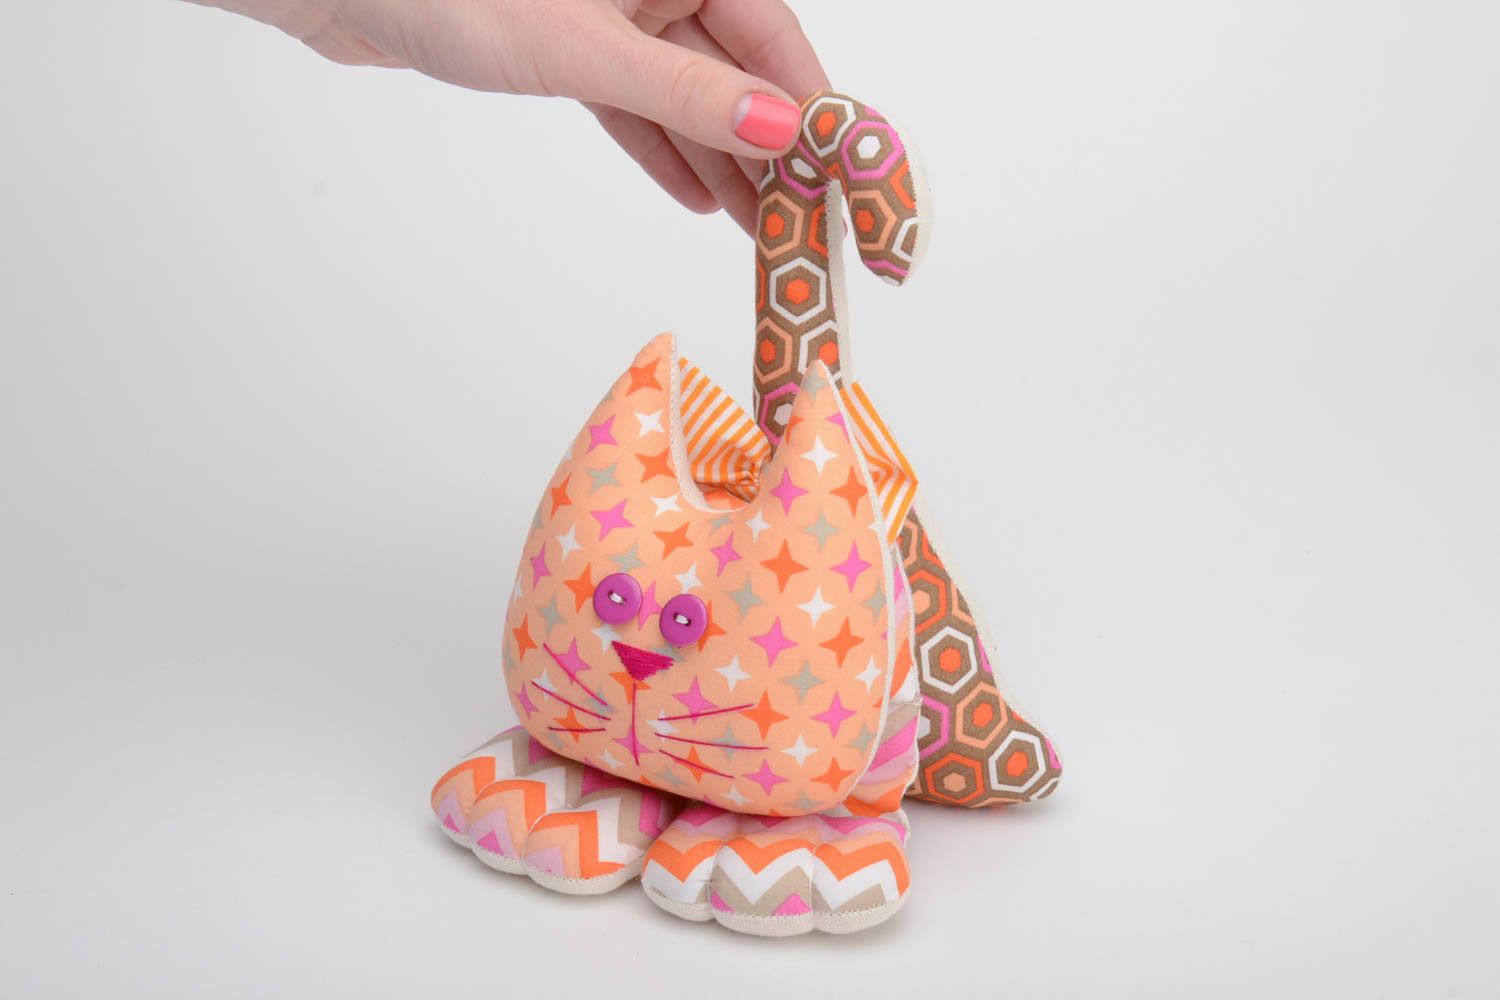 Красочная текстильная игрушка кот из хлопка ручной работы оригинальная для декора фото 5